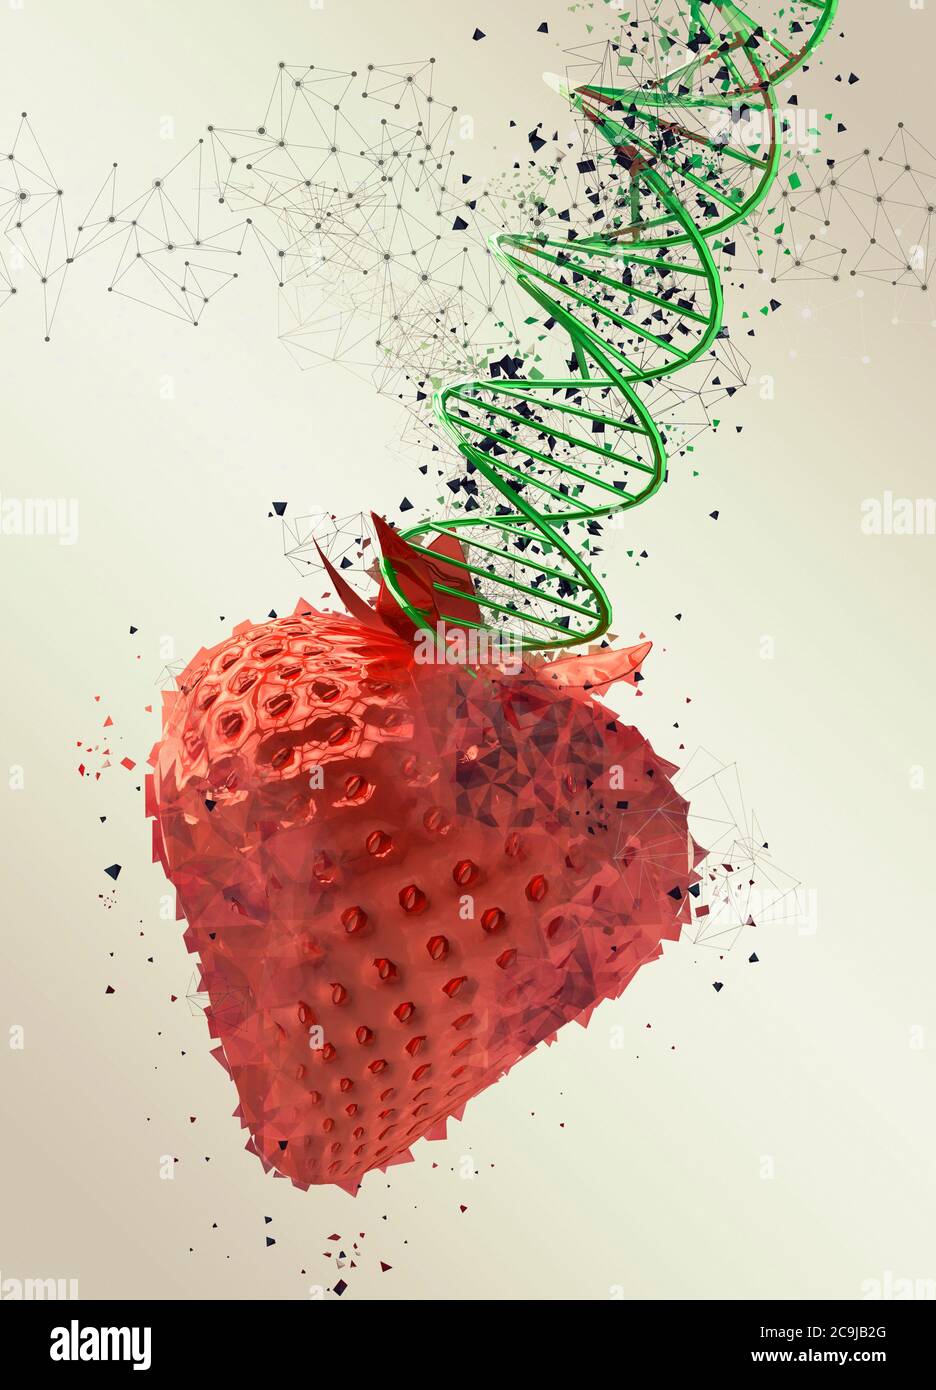 Fraise génétiquement modifiée, illustration. Banque D'Images